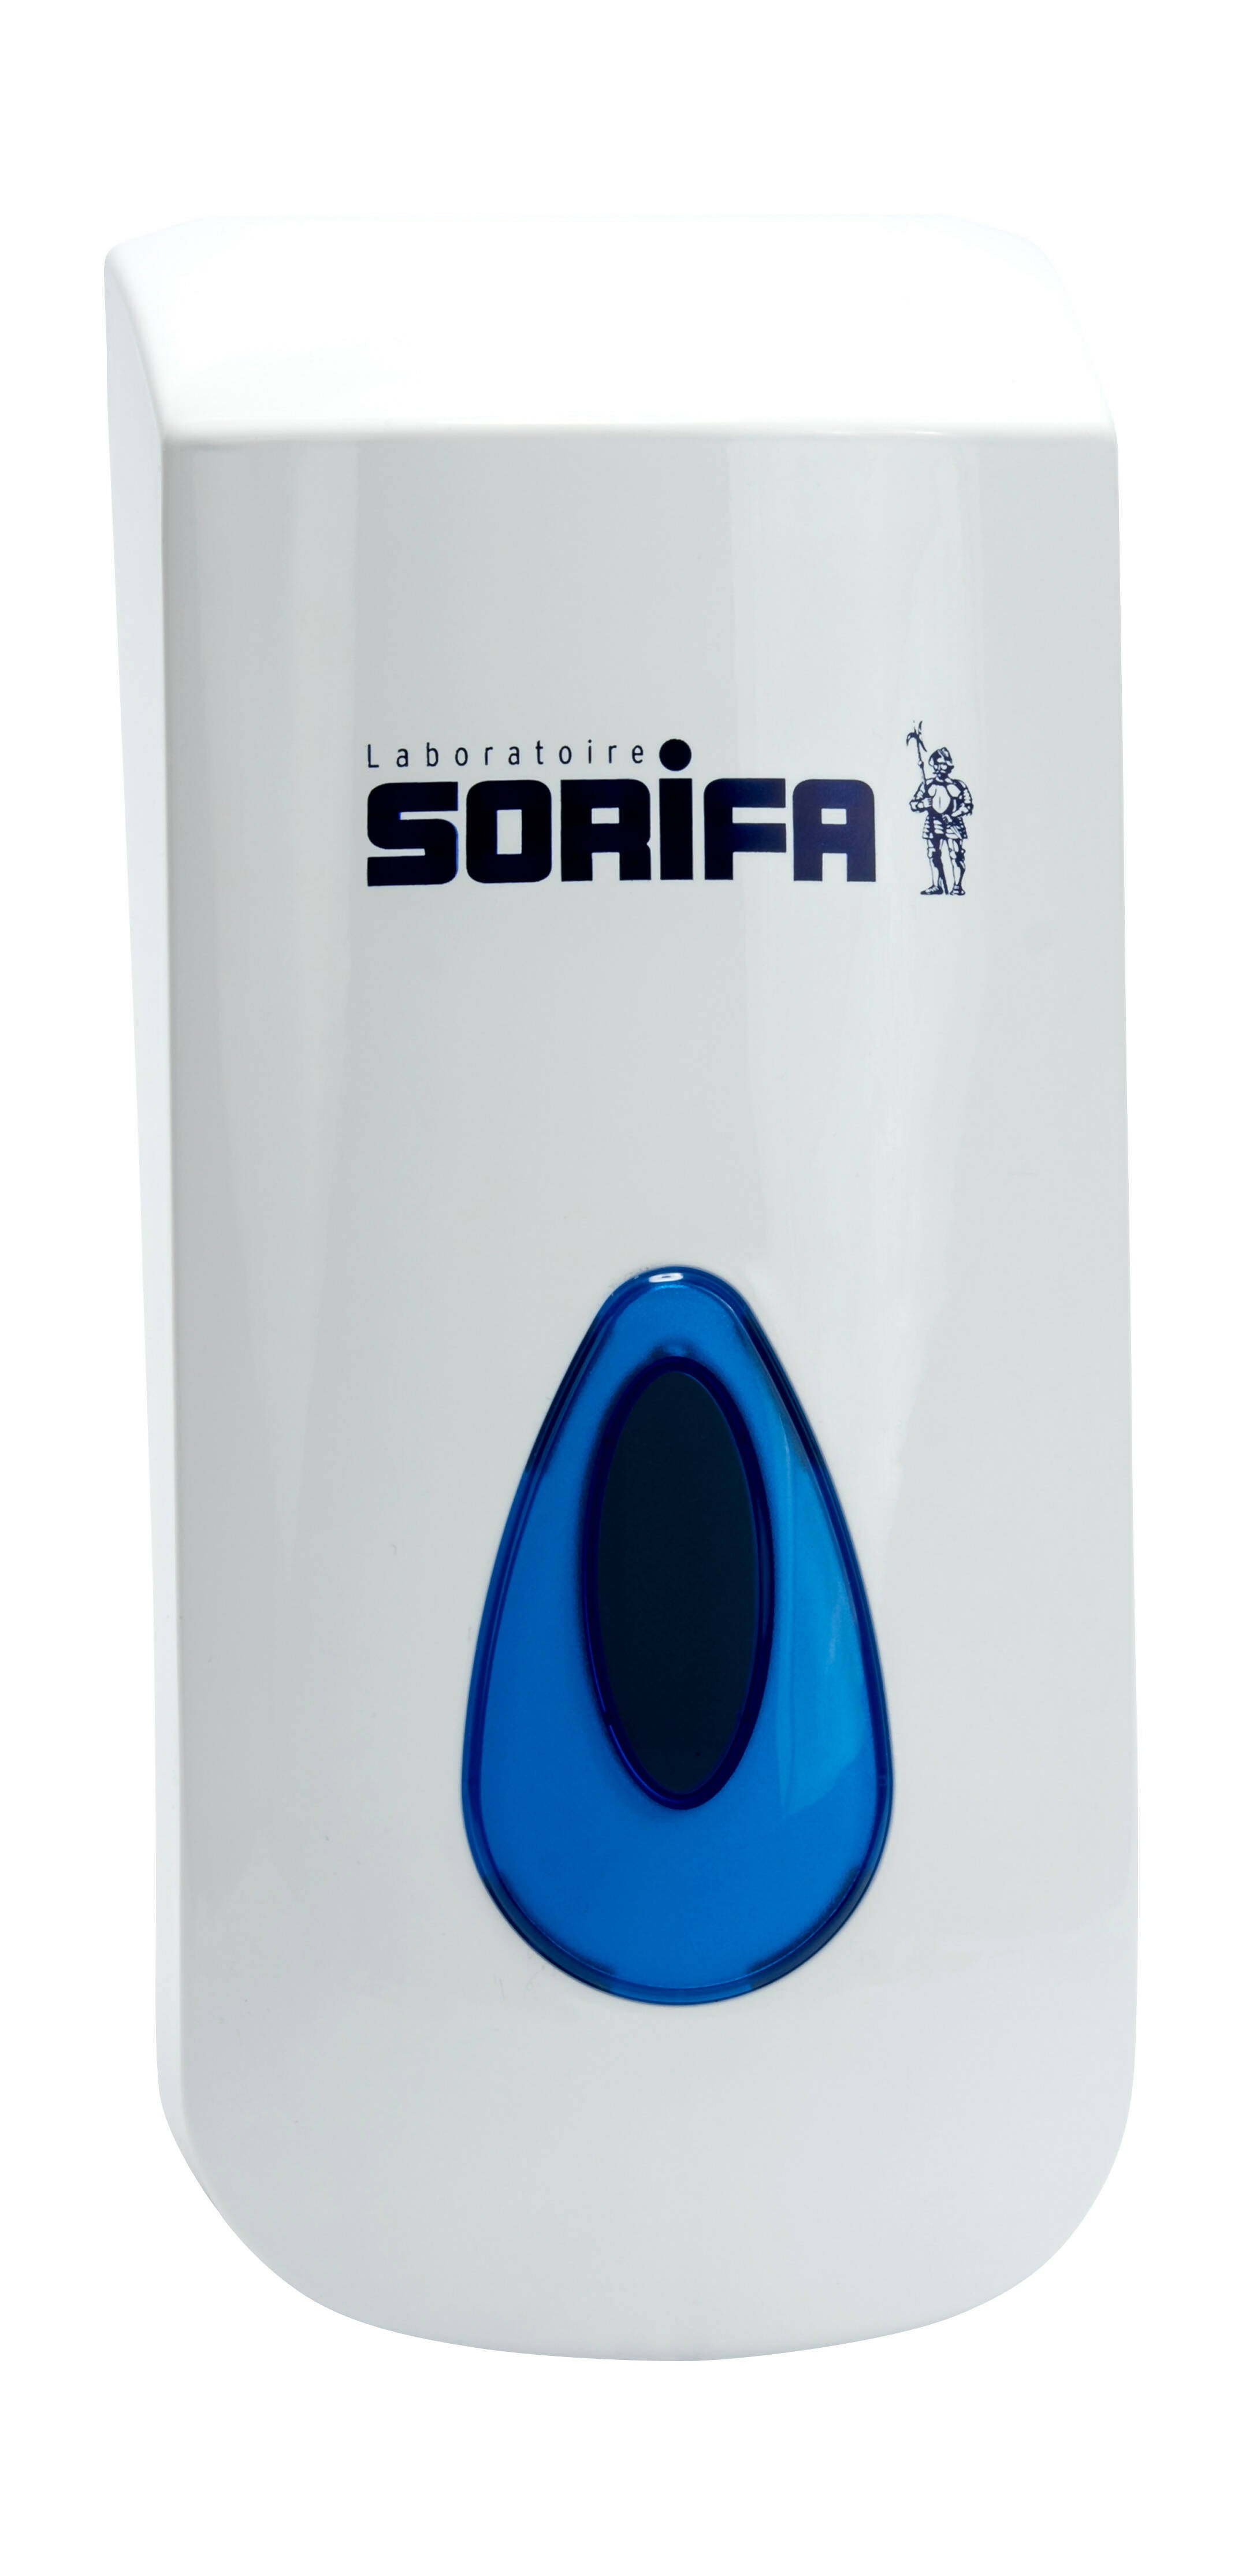 SORIFA – 2er-Set – Robuster, ergonomischer, abschließbarer Wandspender aus Metall für 1L-Flasche der Marke SORIFA – Für Gele und Flüssigseifen. - 0